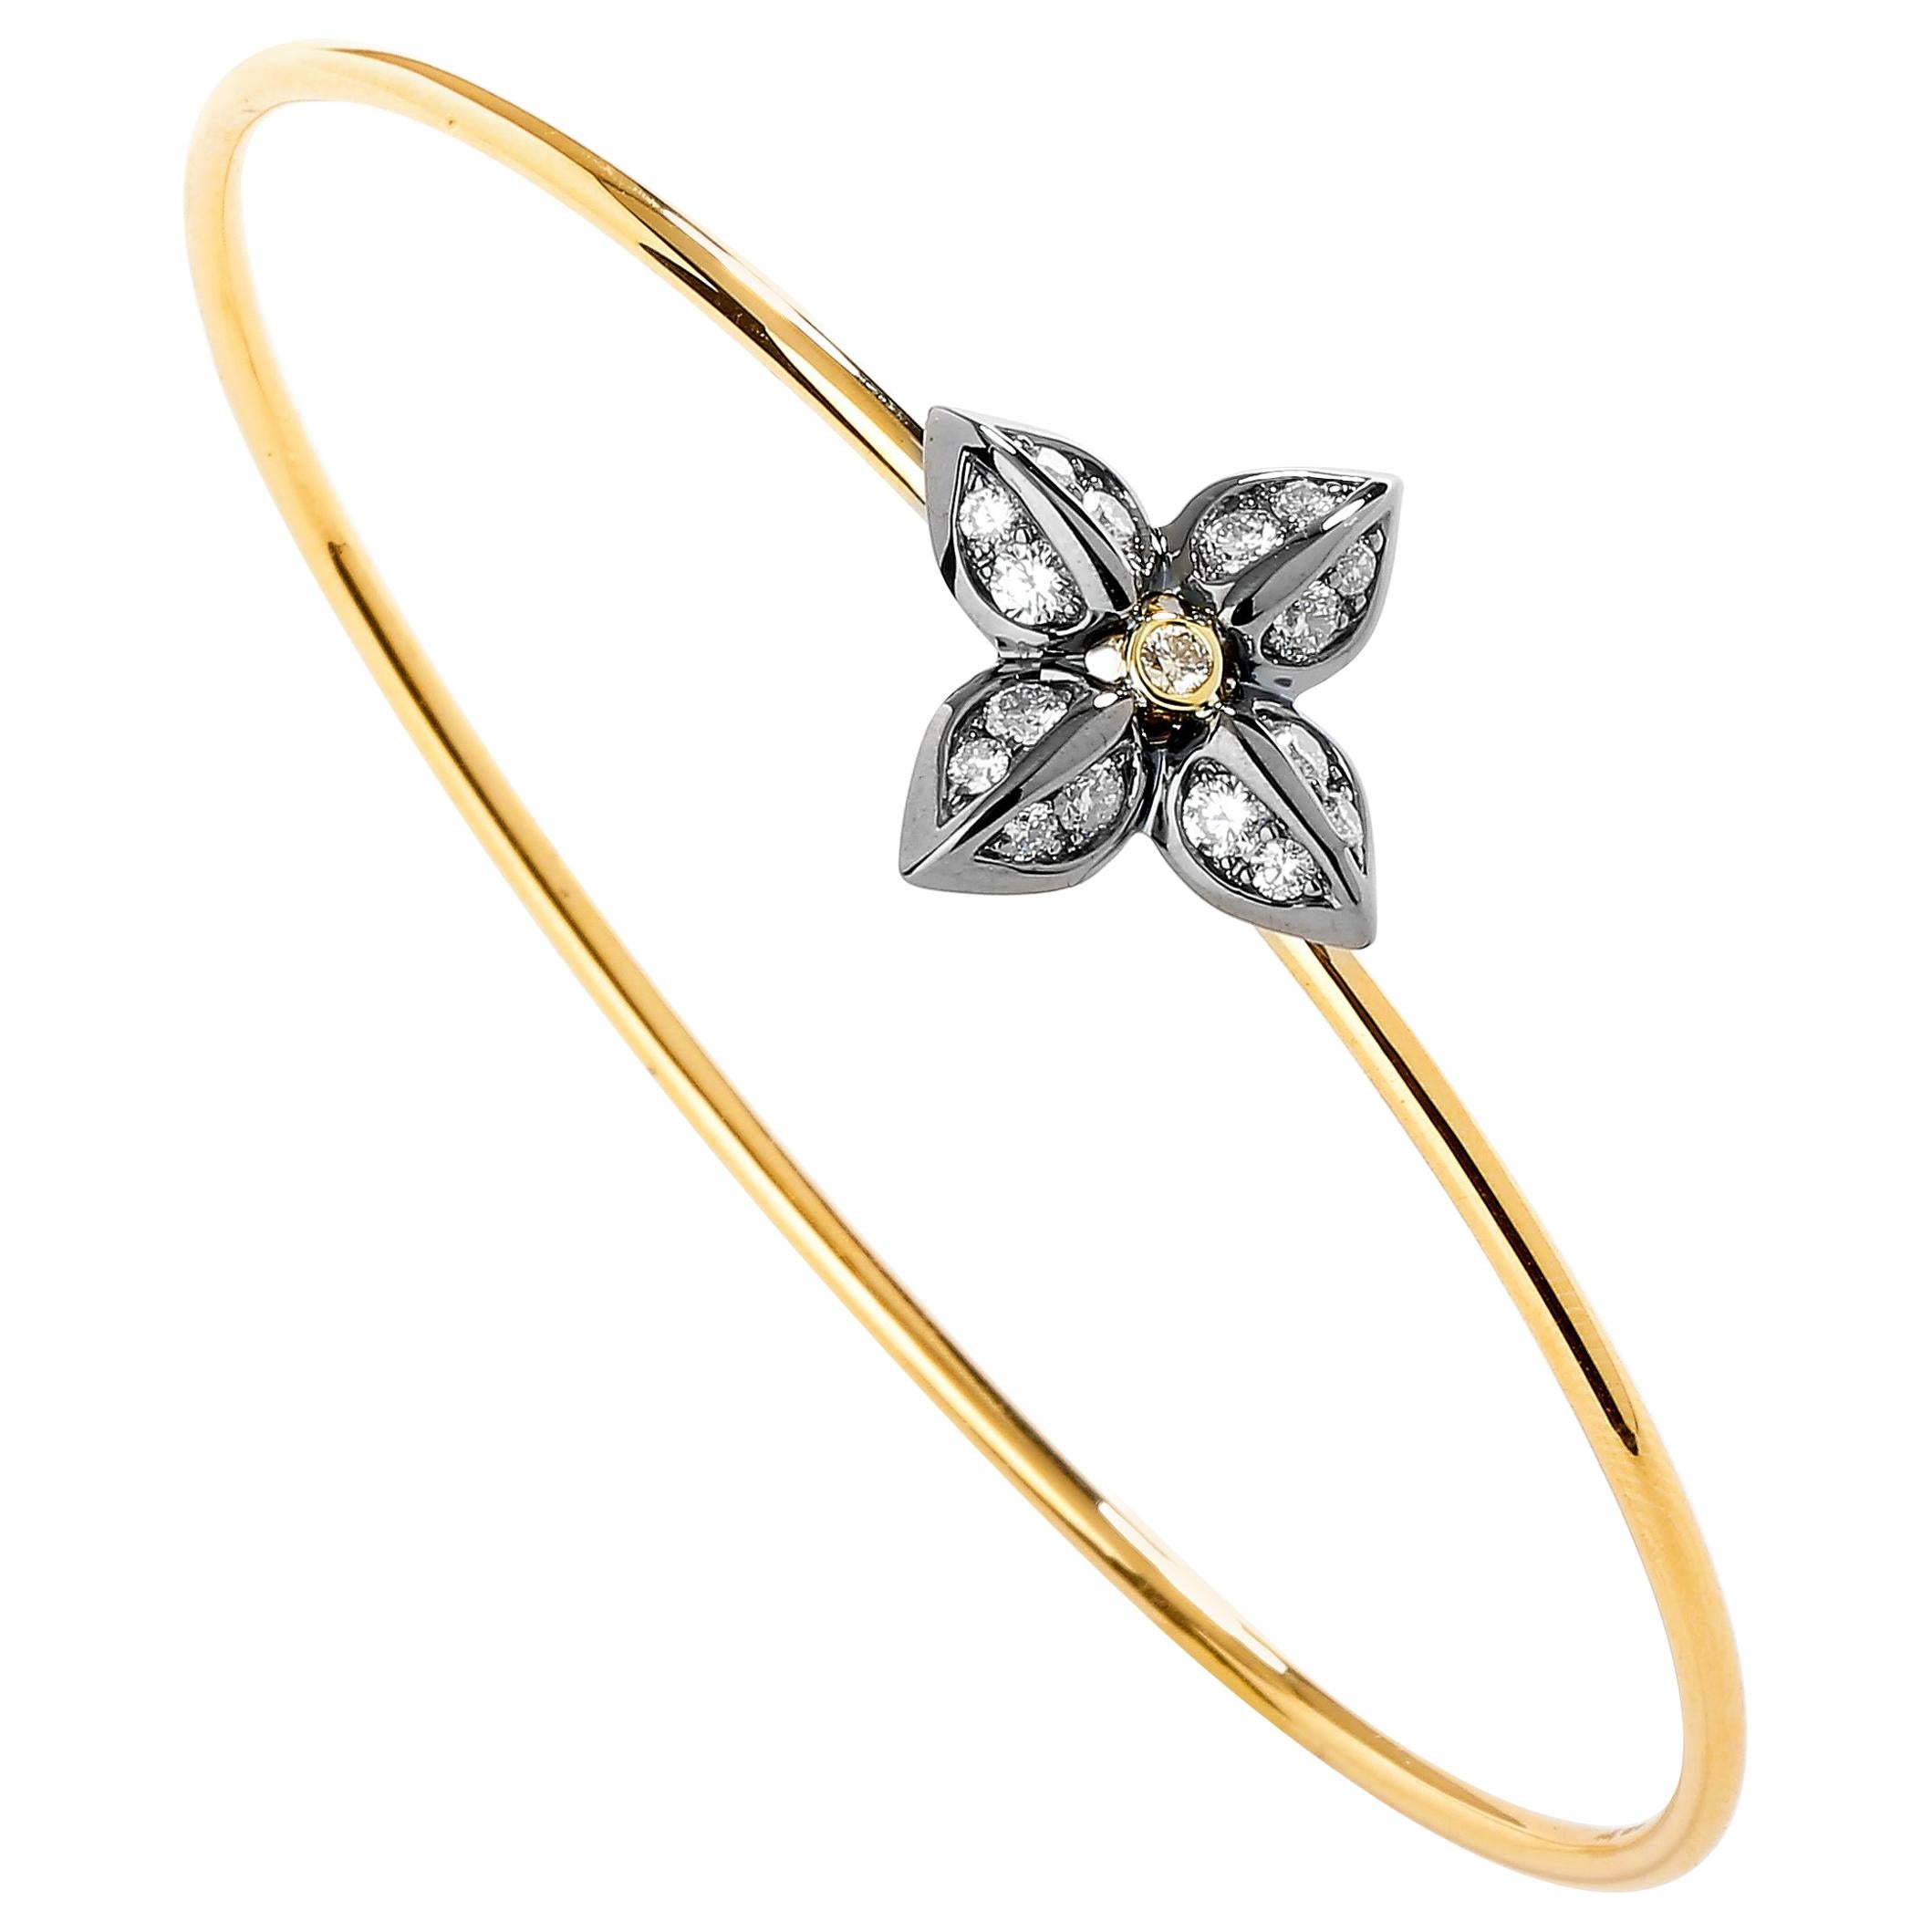 Syna Oxidized Silver Yellow Gold Flower Bracelet with Diamonds